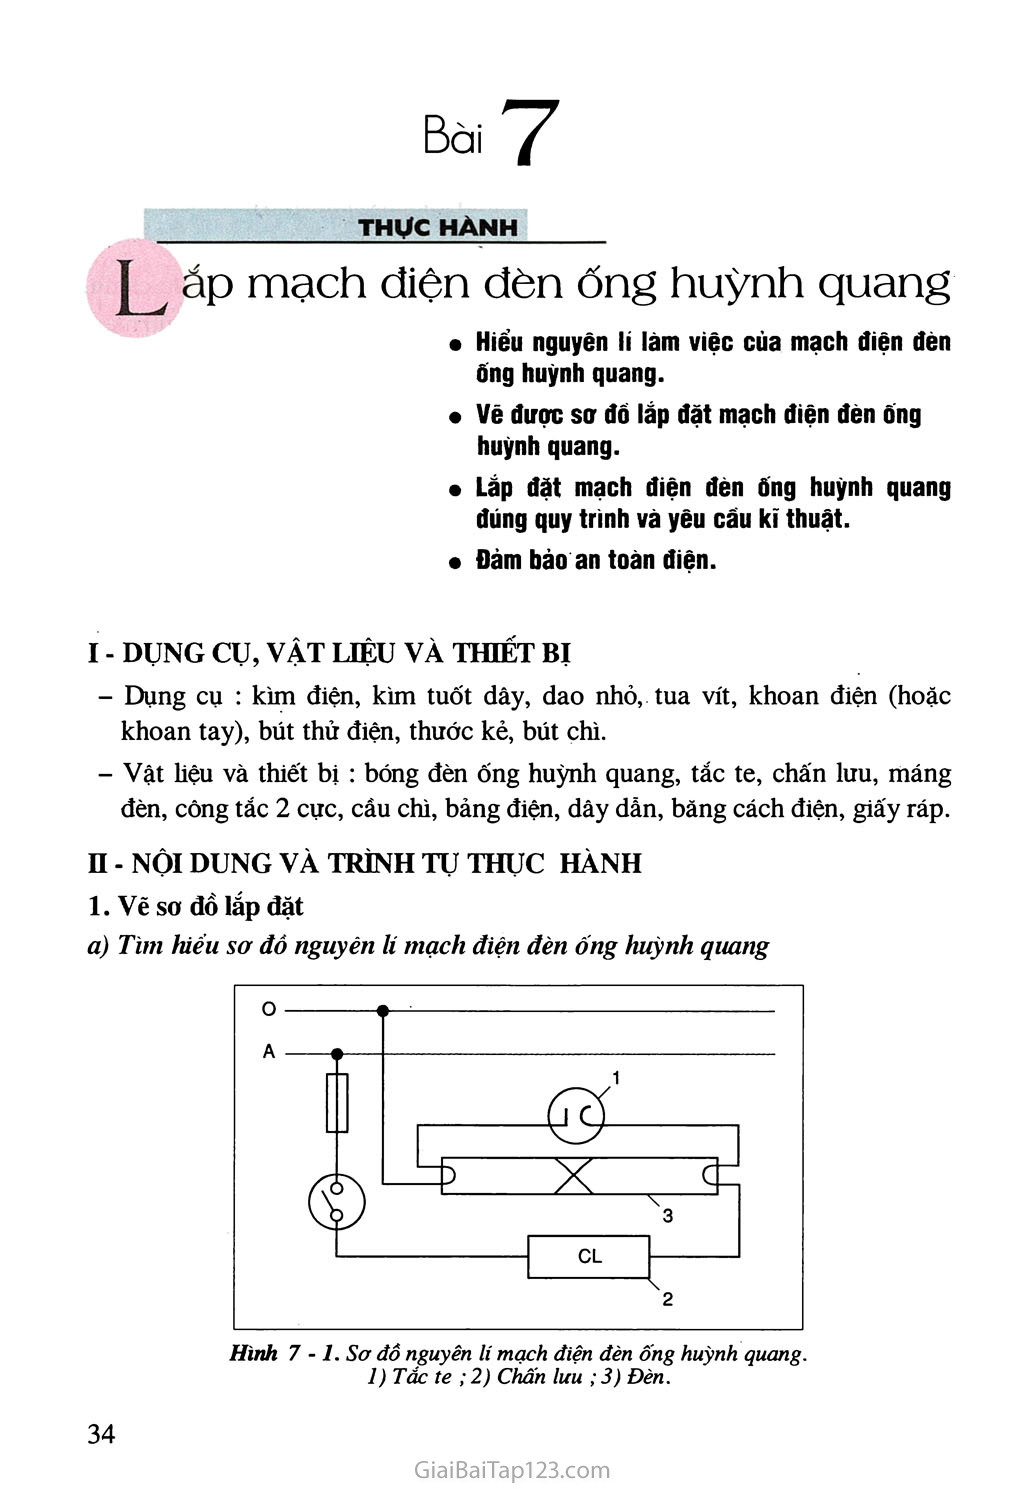 SGK Công Nghệ 9 - Bài 7. Thực hành: Lắp mạch năng lượng điện đèn ống huỳnh quang